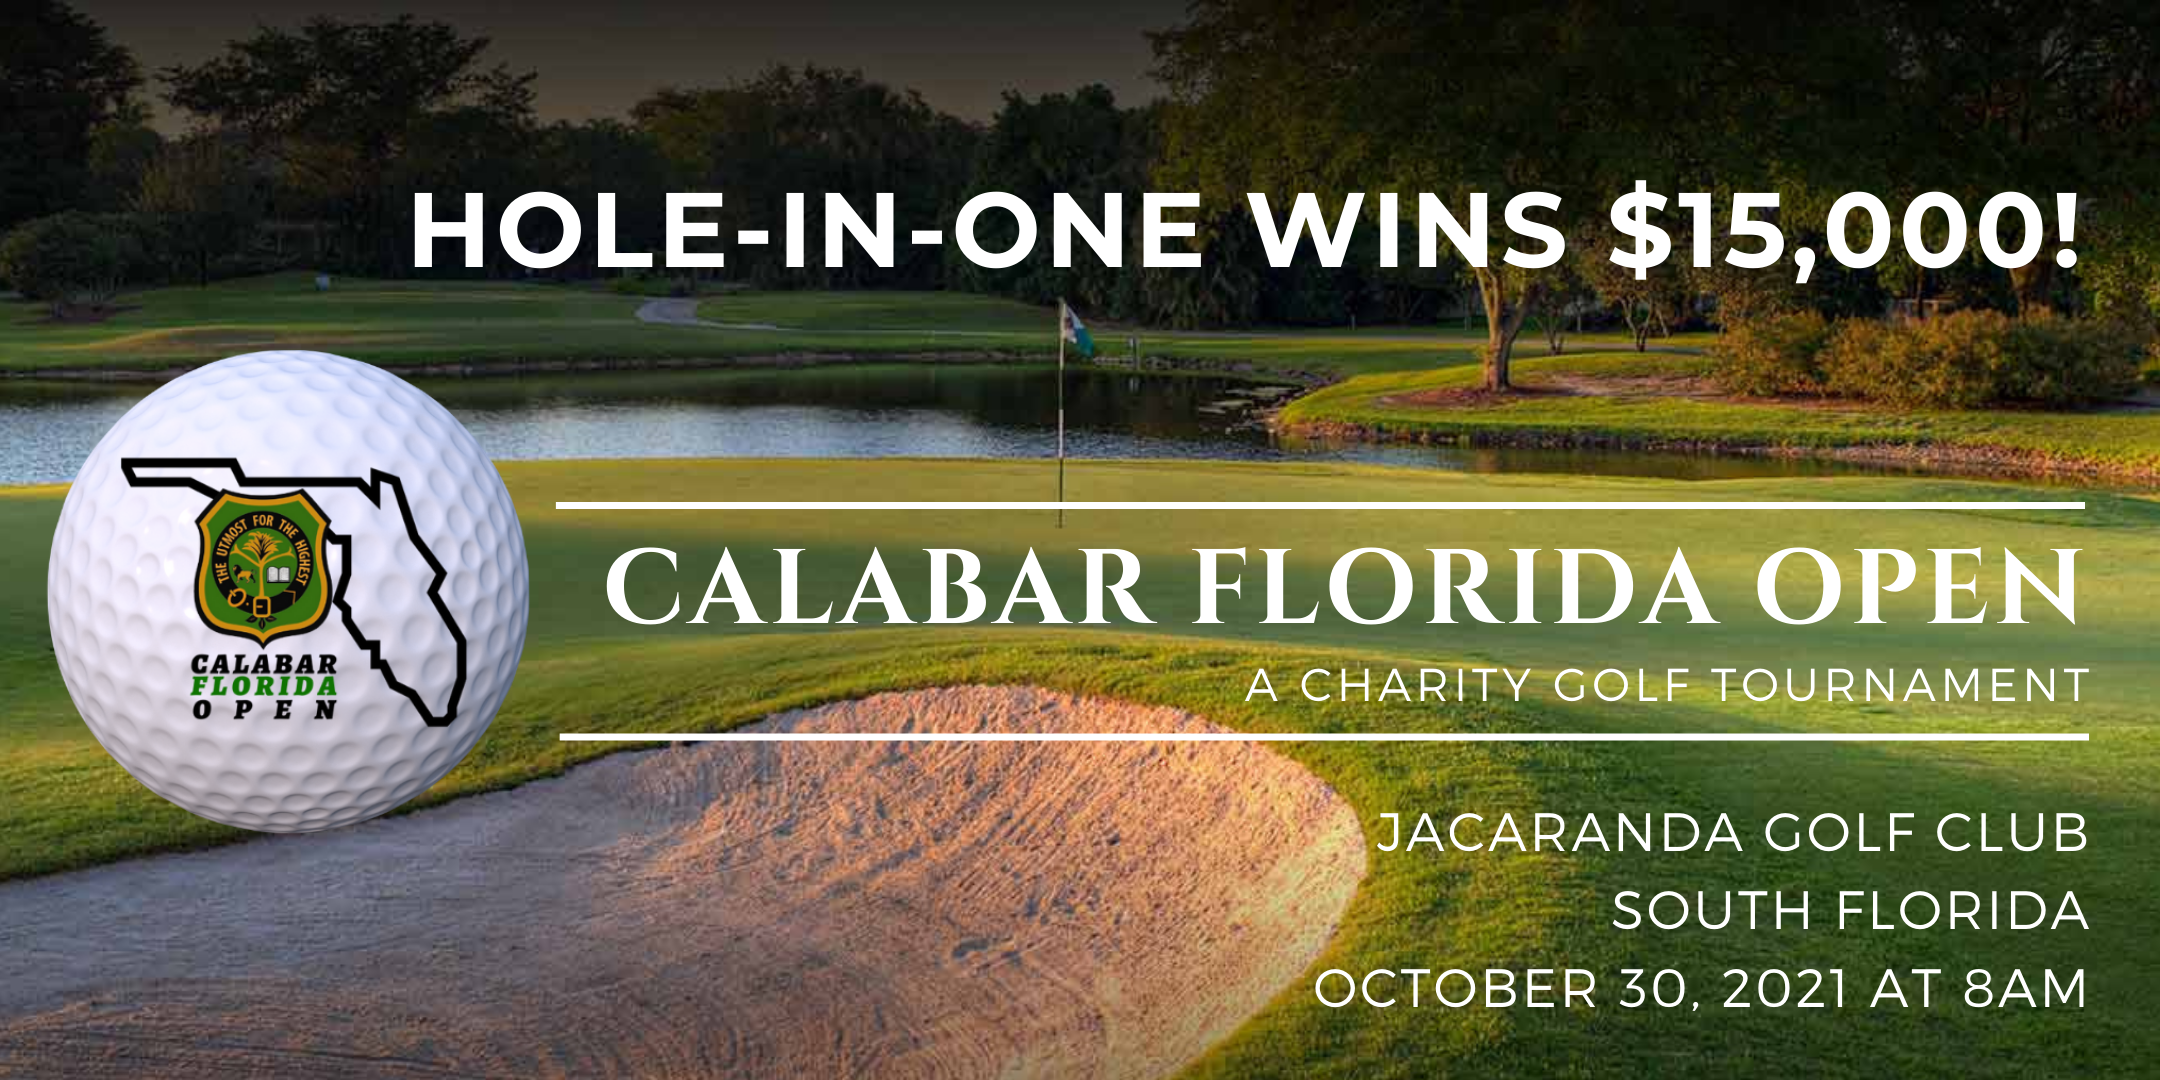 Calabar Florida Open - A Charity Golf Tournament